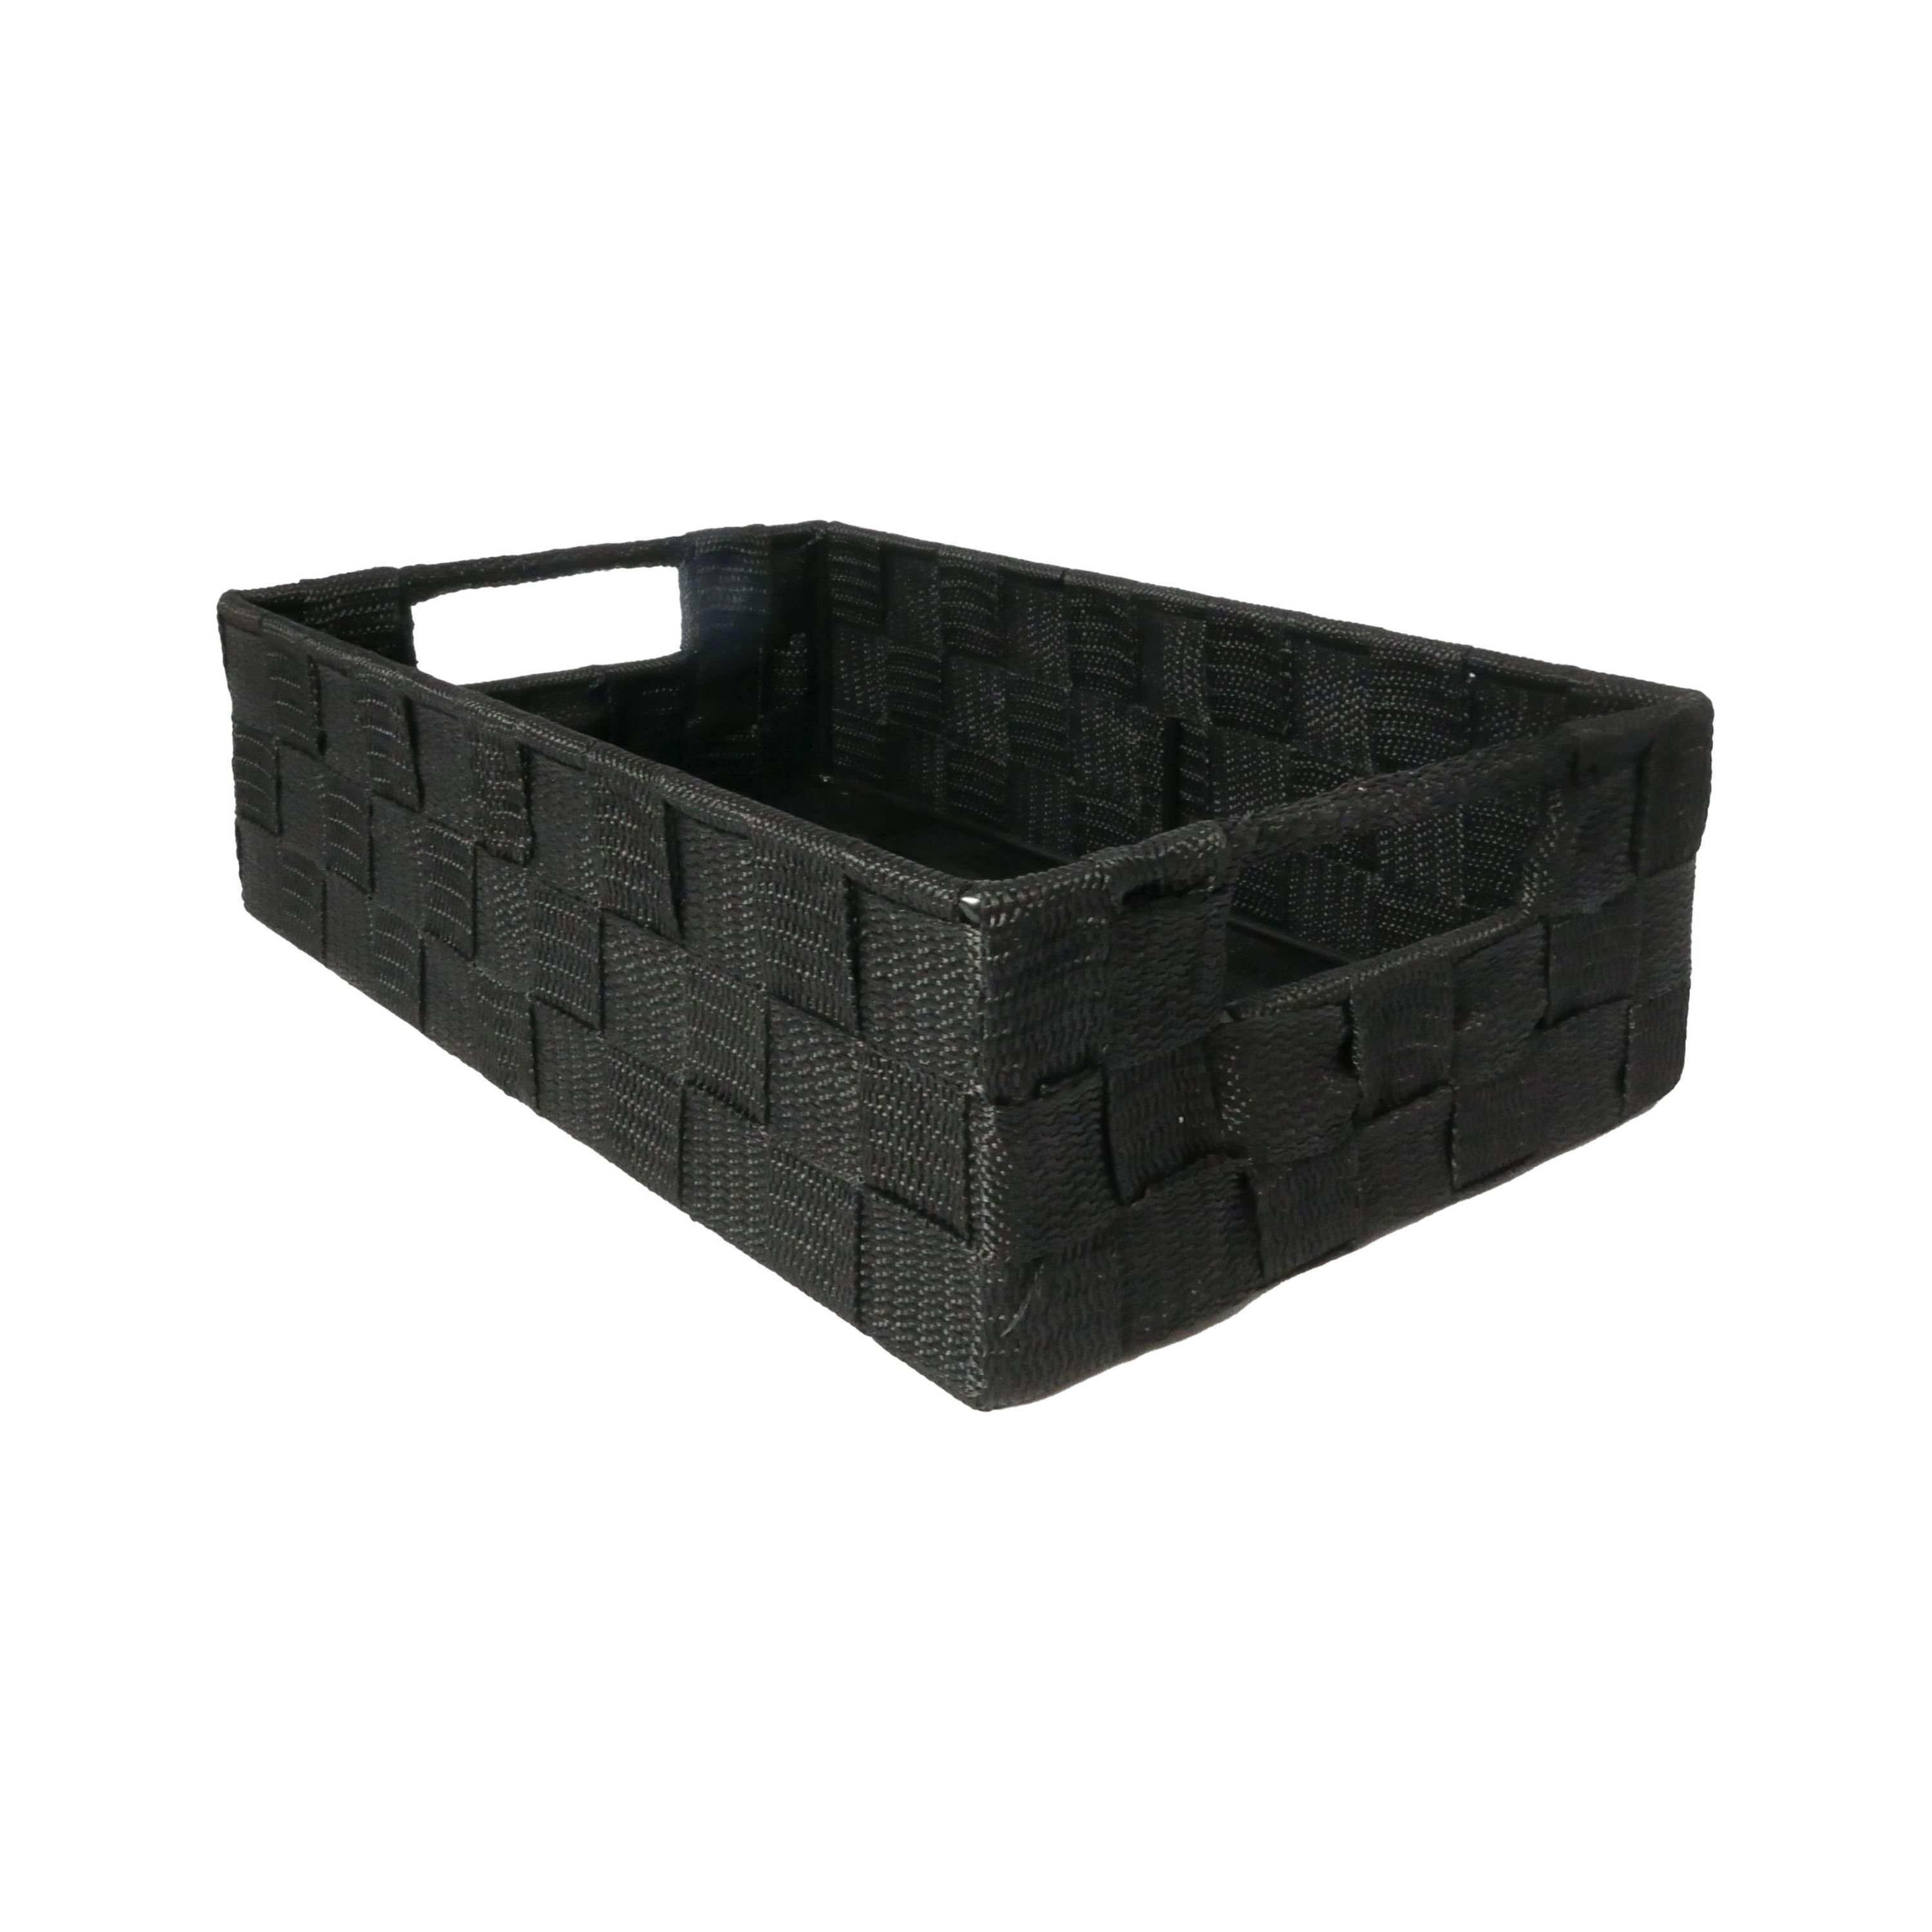 B&S Regalkorb Regalkorb Geflecht schwarz Ordnungsbox rechteckig 28 x 38 cm,  Aus Polypropylen - hohe Festigkeit und Beständigkeit gegenüber Feuchtigkeit